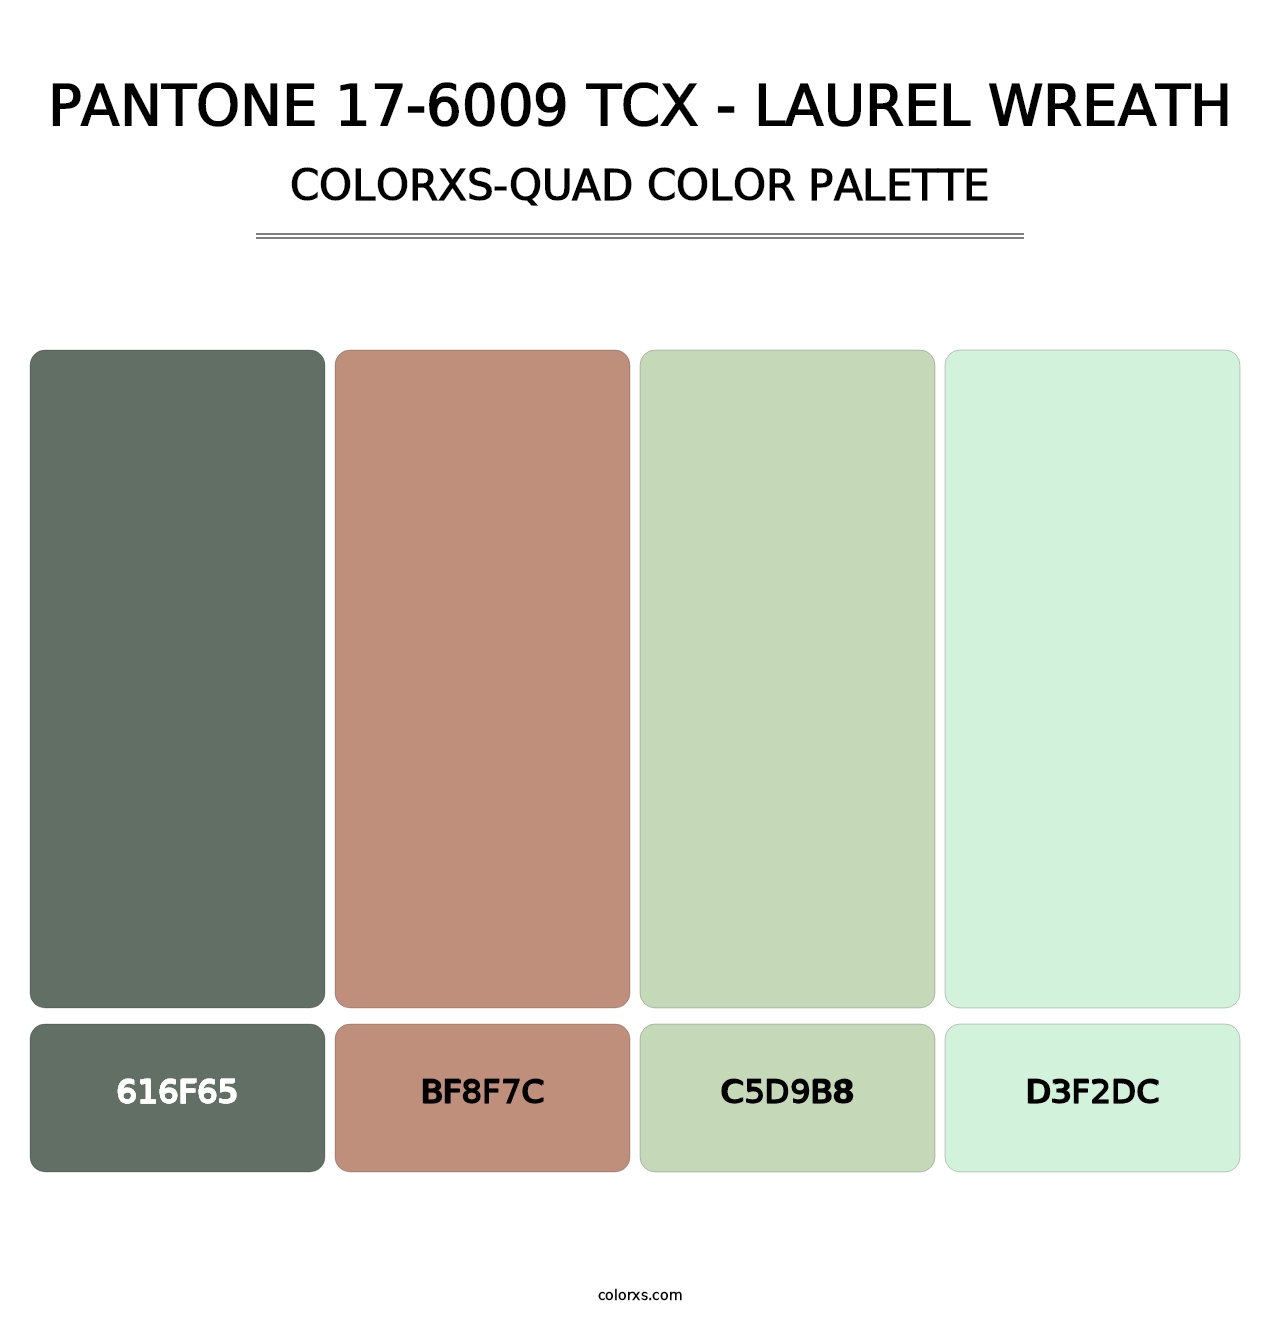 PANTONE 17-6009 TCX - Laurel Wreath - Colorxs Quad Palette